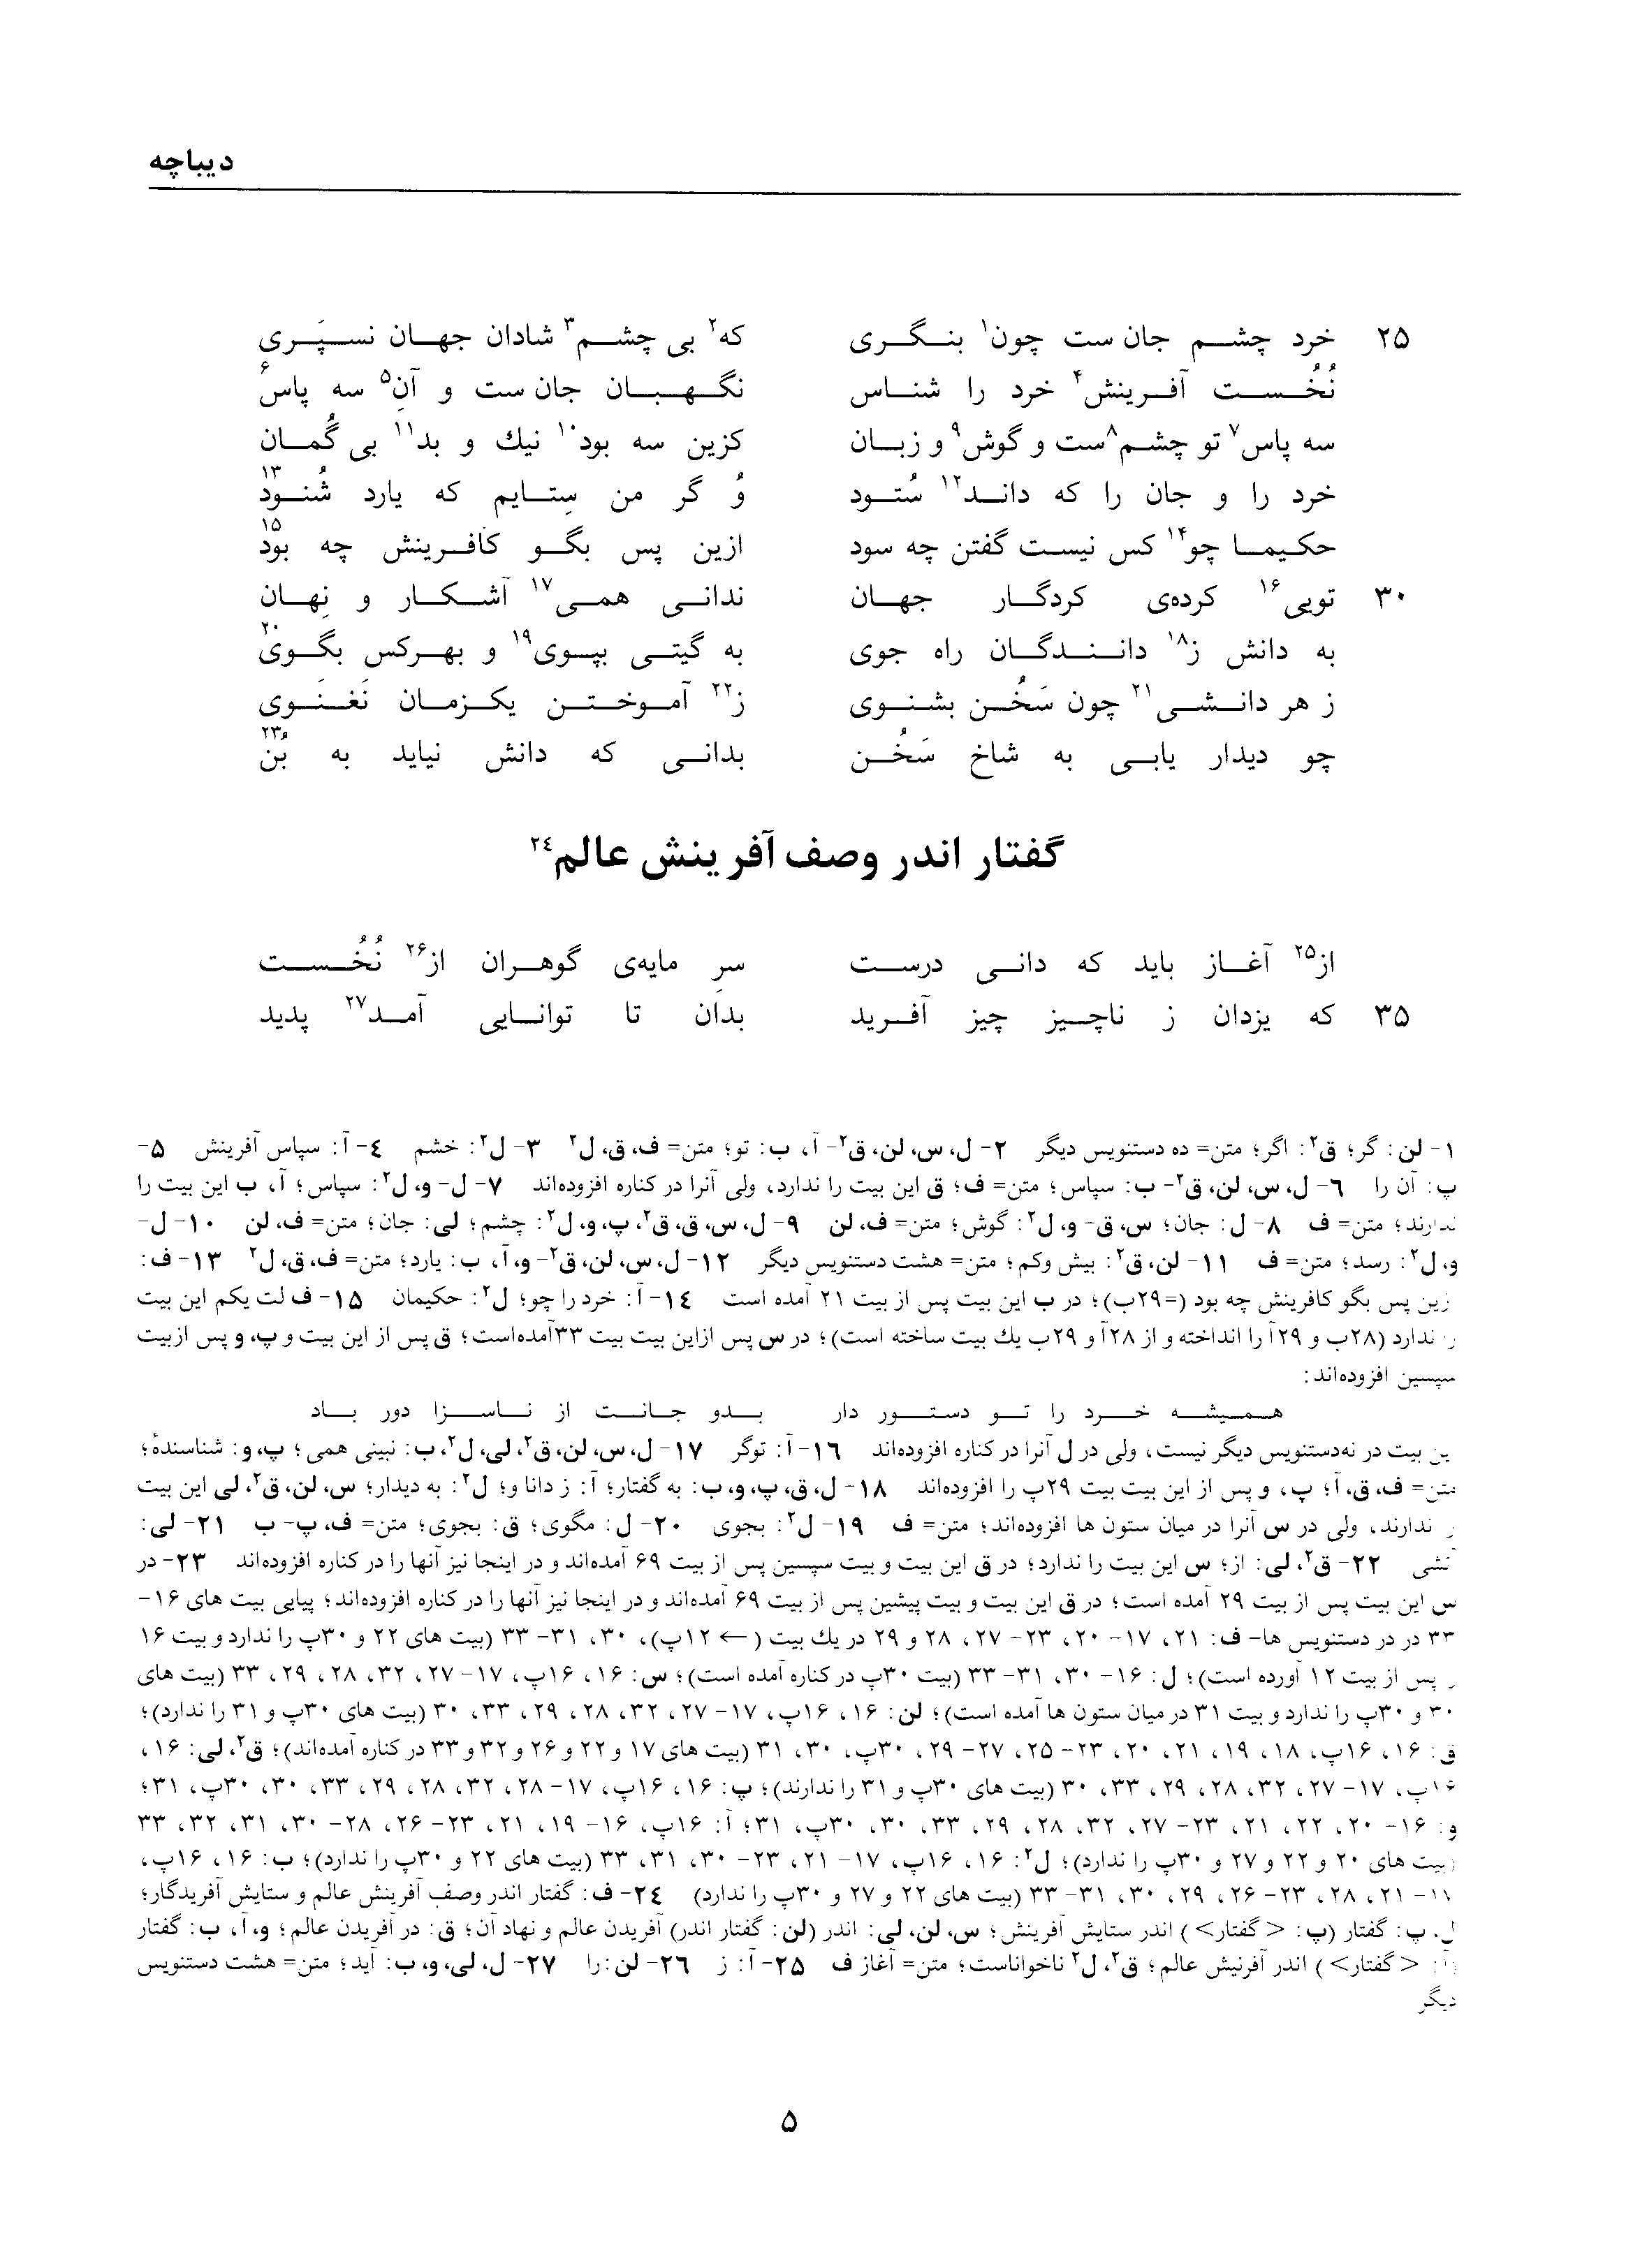 vol. 1, p. 5